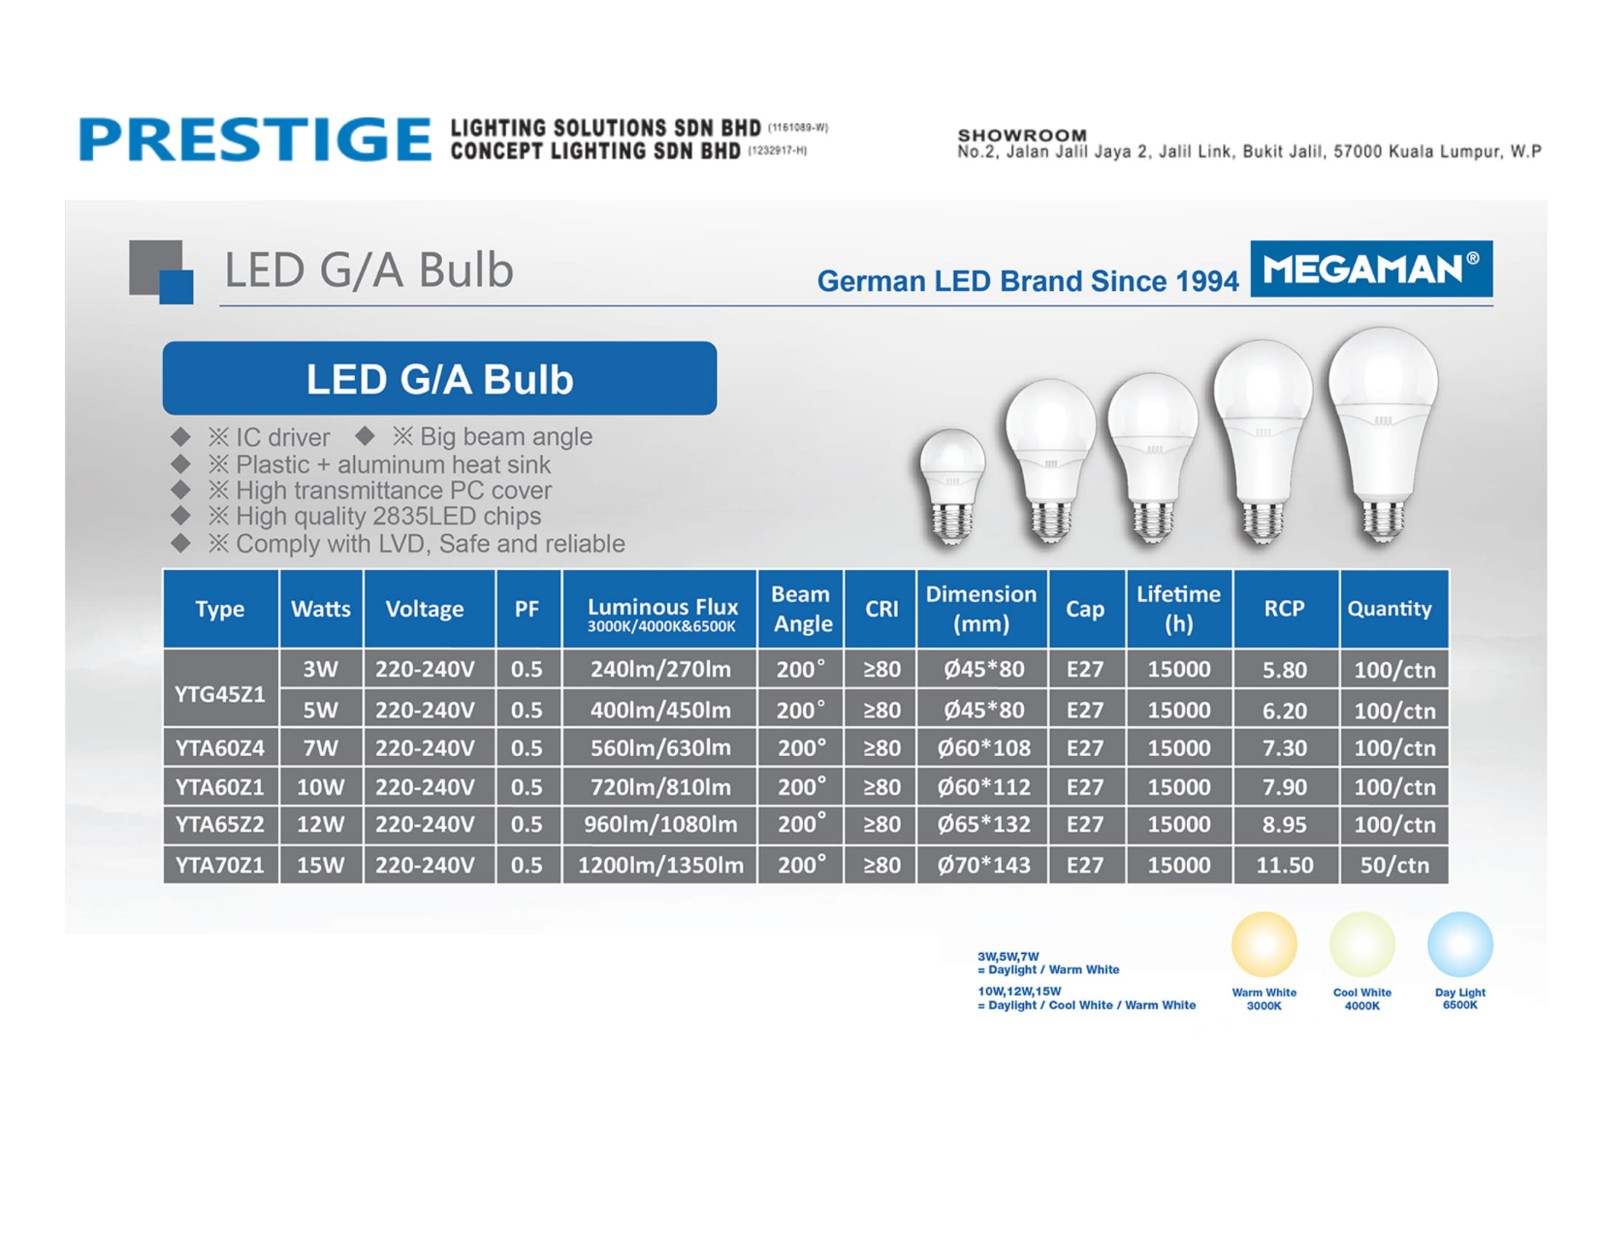 LED G/A Bulb 